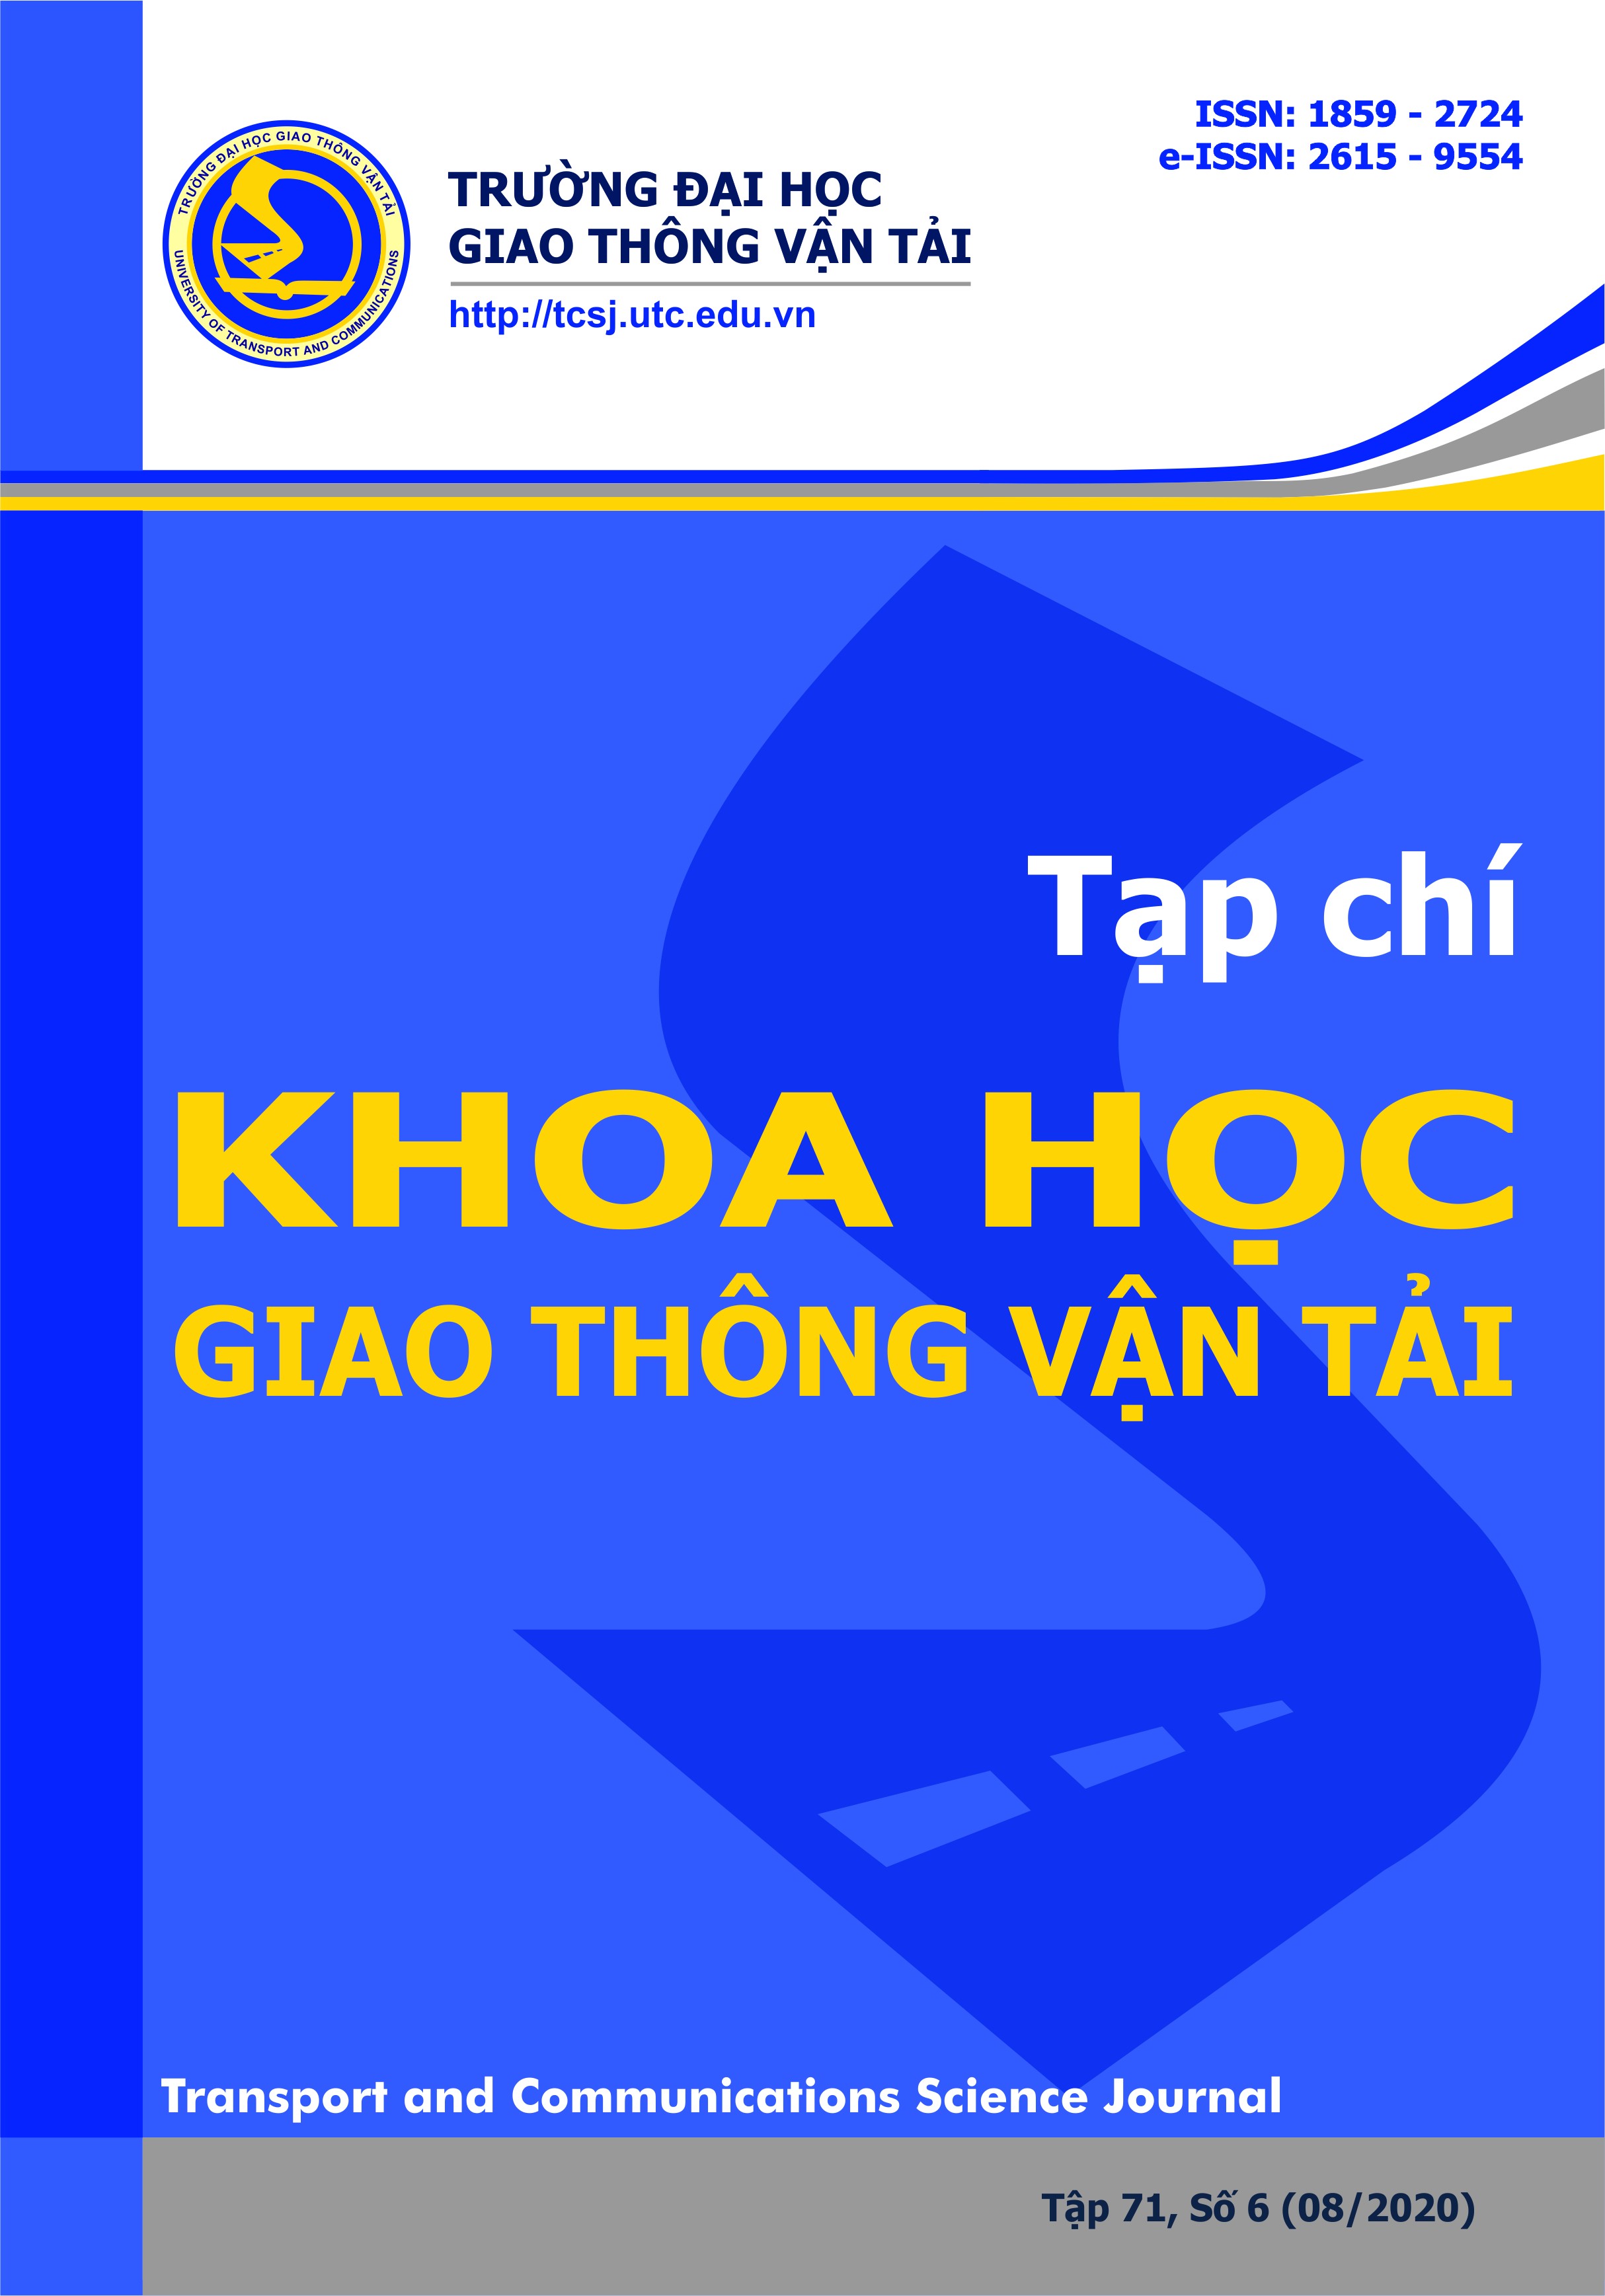 Đánh giá dịch vụ giao hàng chặng cuối tại Việt Nam từ góc độ người sử dụng cuối cùng